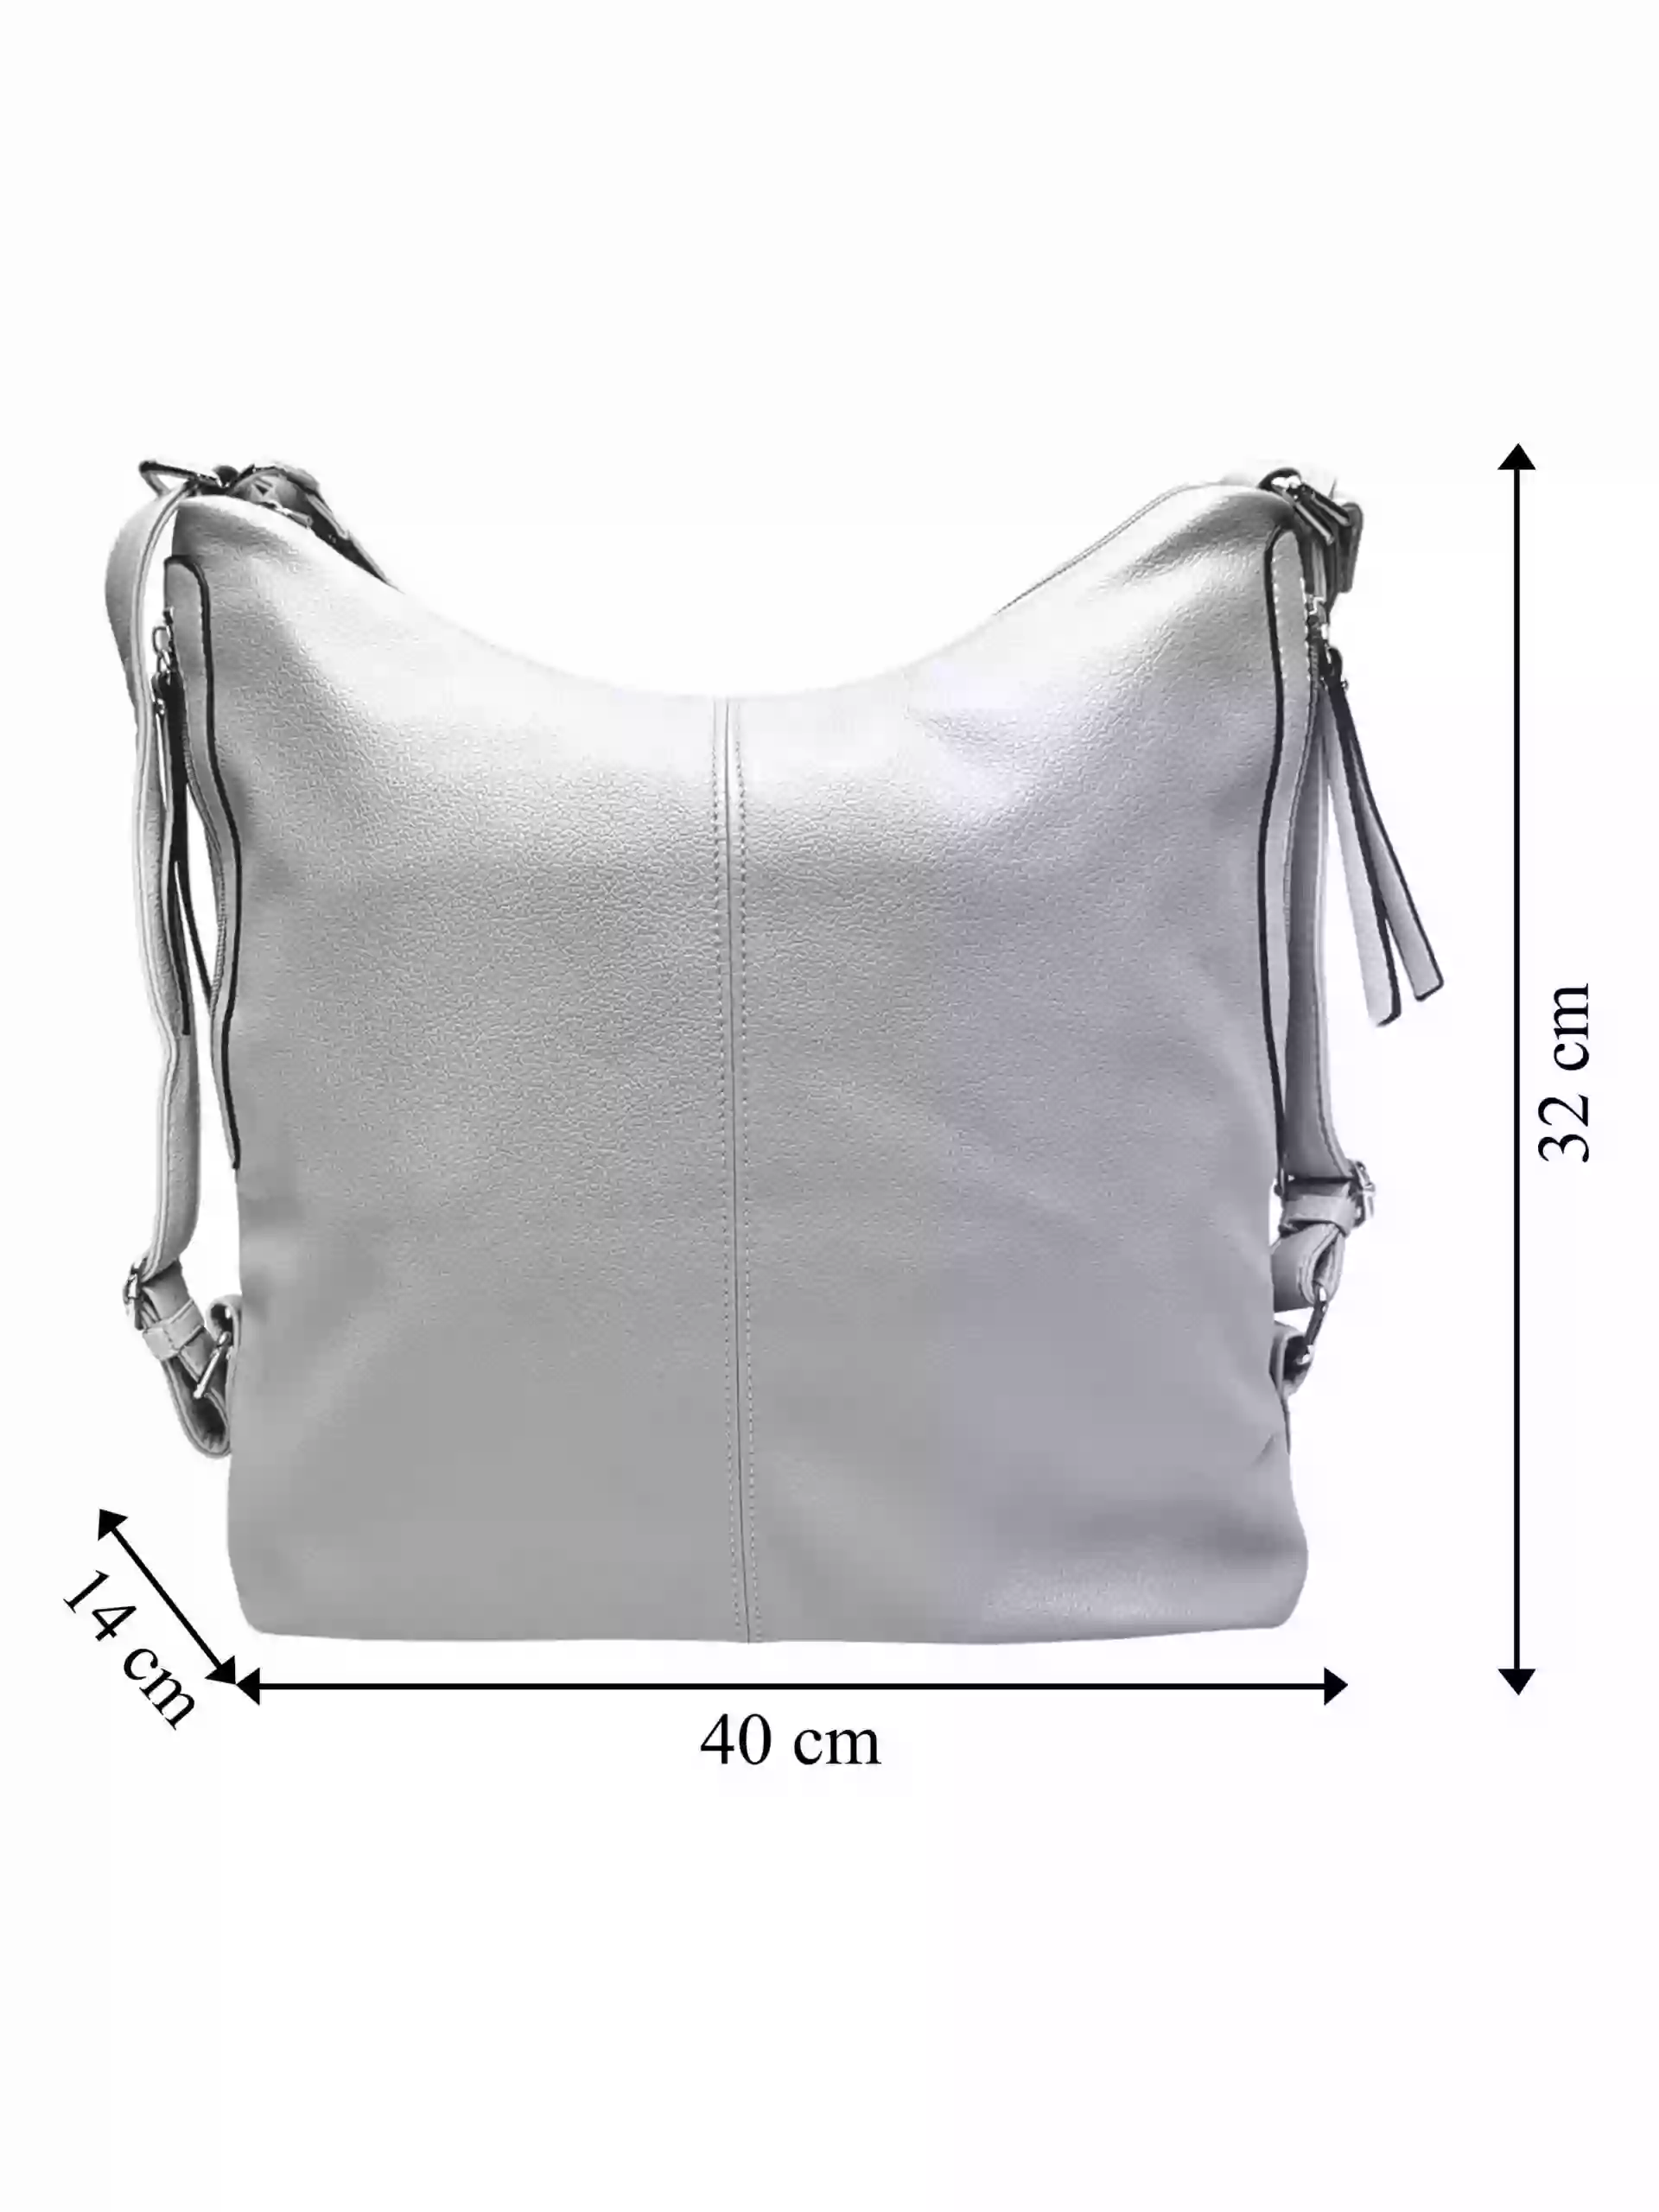 Velký světle šedý kabelko-batoh s bočními kapsami, Tapple, 9314-3, přední strana kabelko-batohu s rozměry